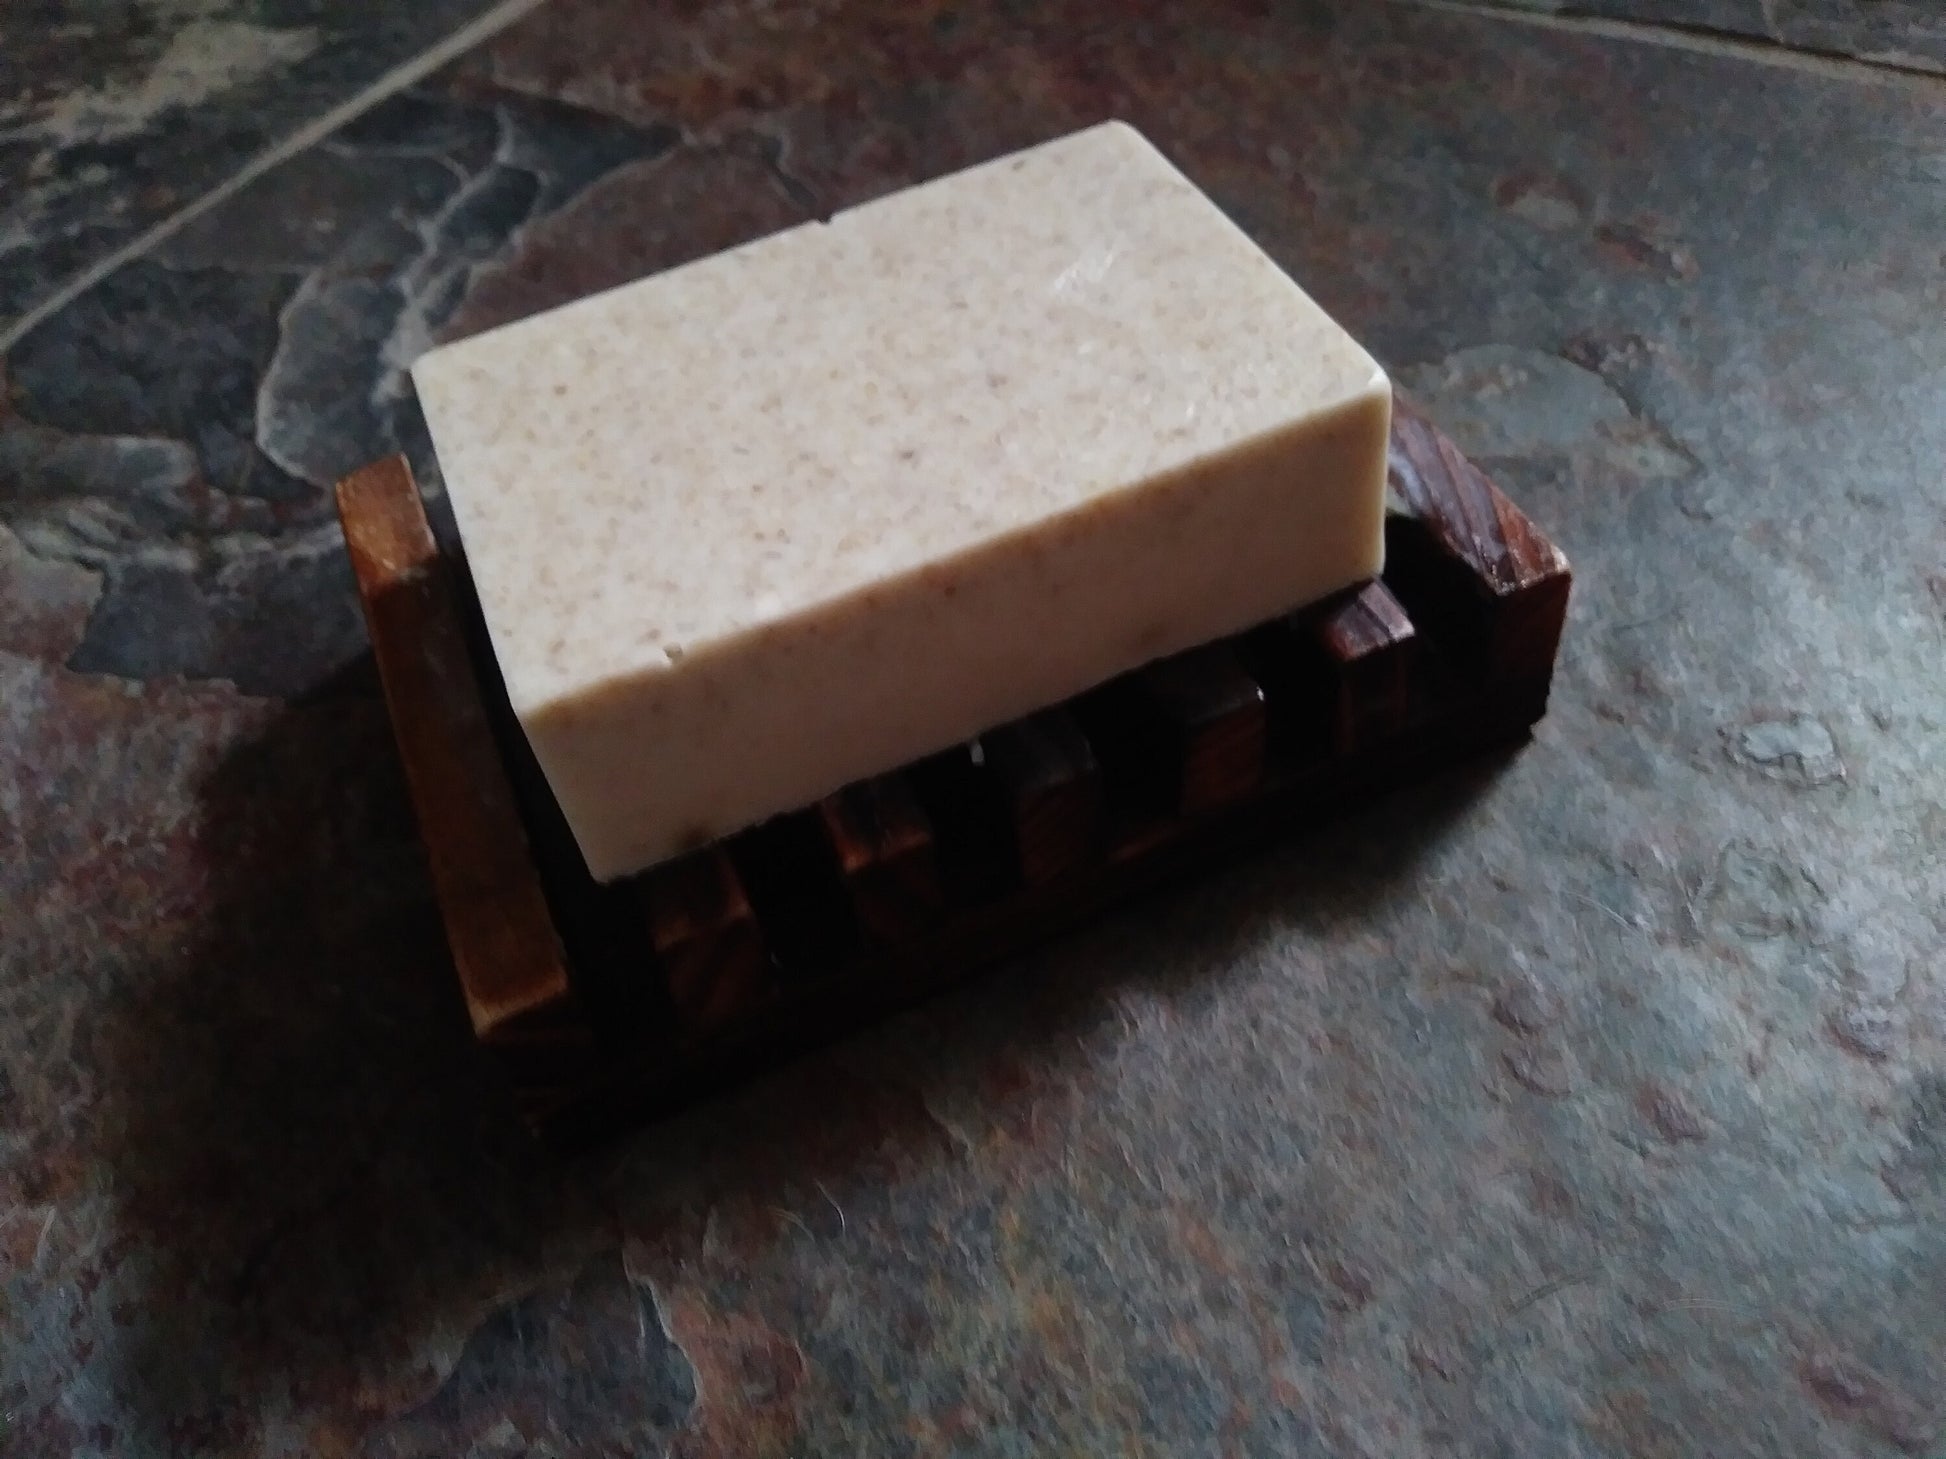 Goatmilk Soap:   Honey & Oat Bars